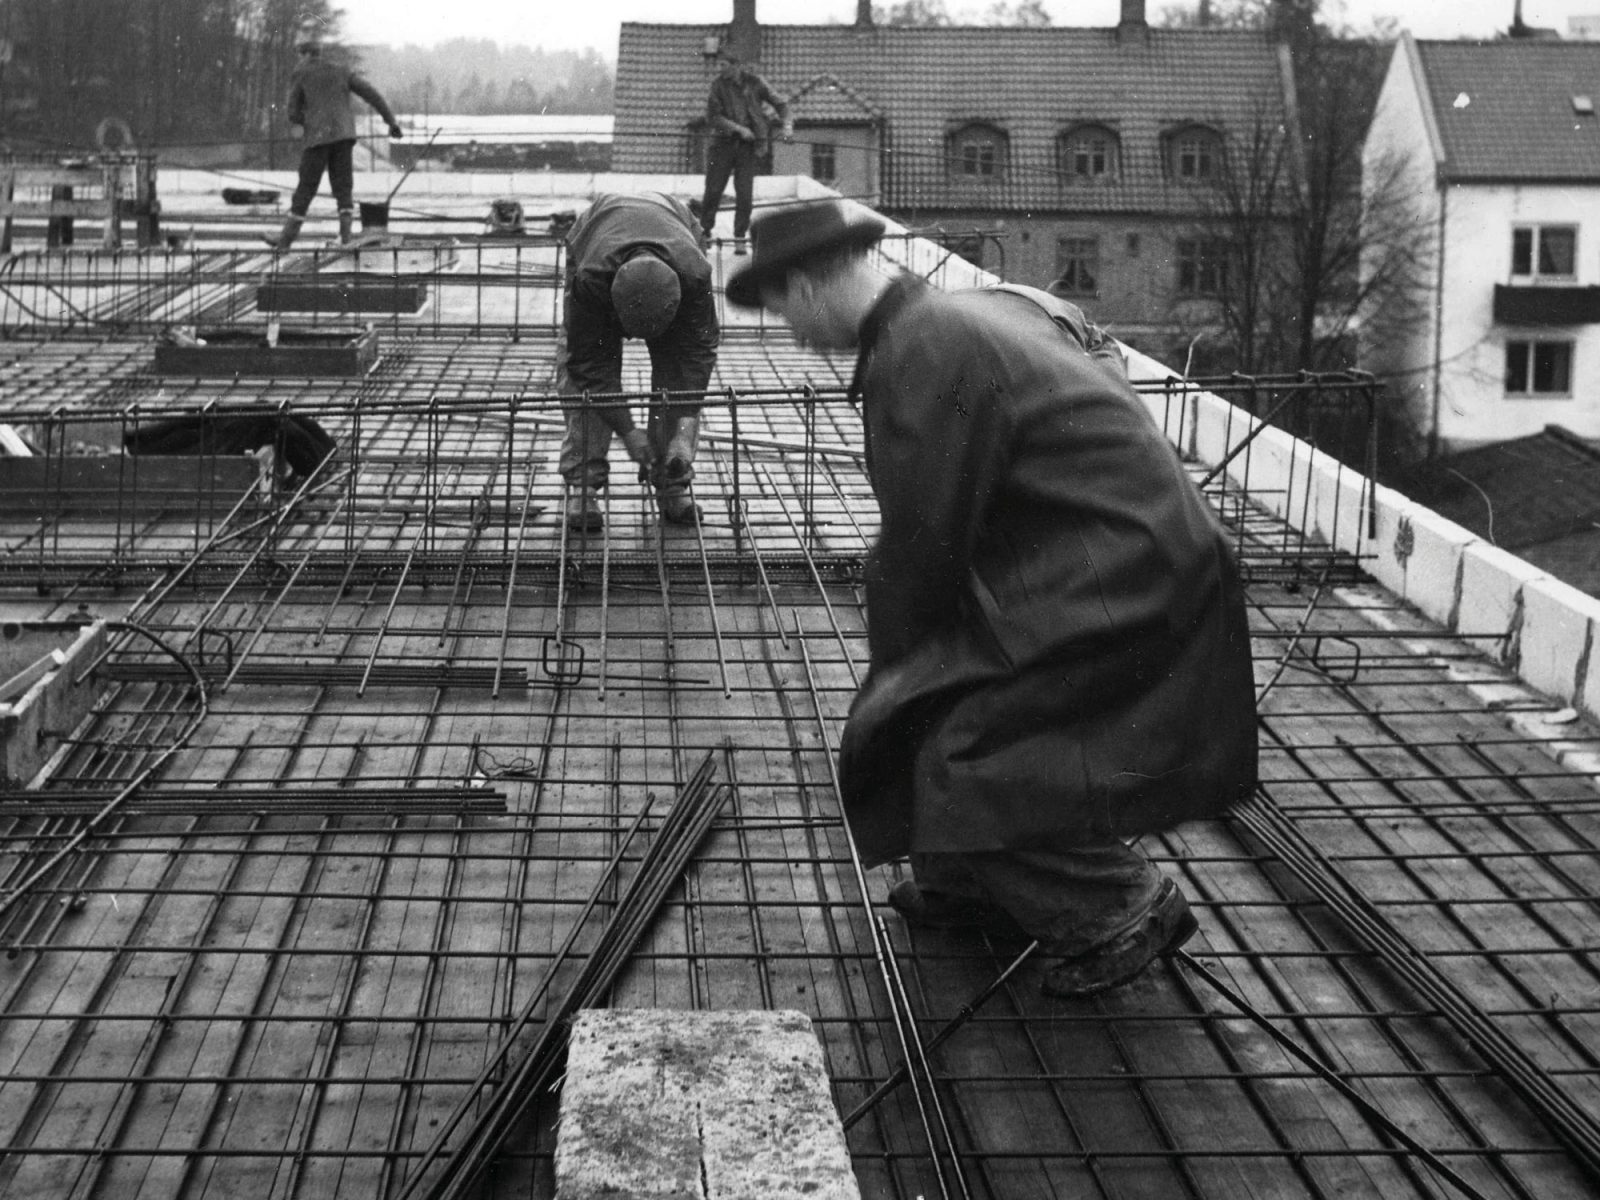 Un homme avec chapeau des années 1950 travaille avec d’autres ouvriers sur un chantier de construction.